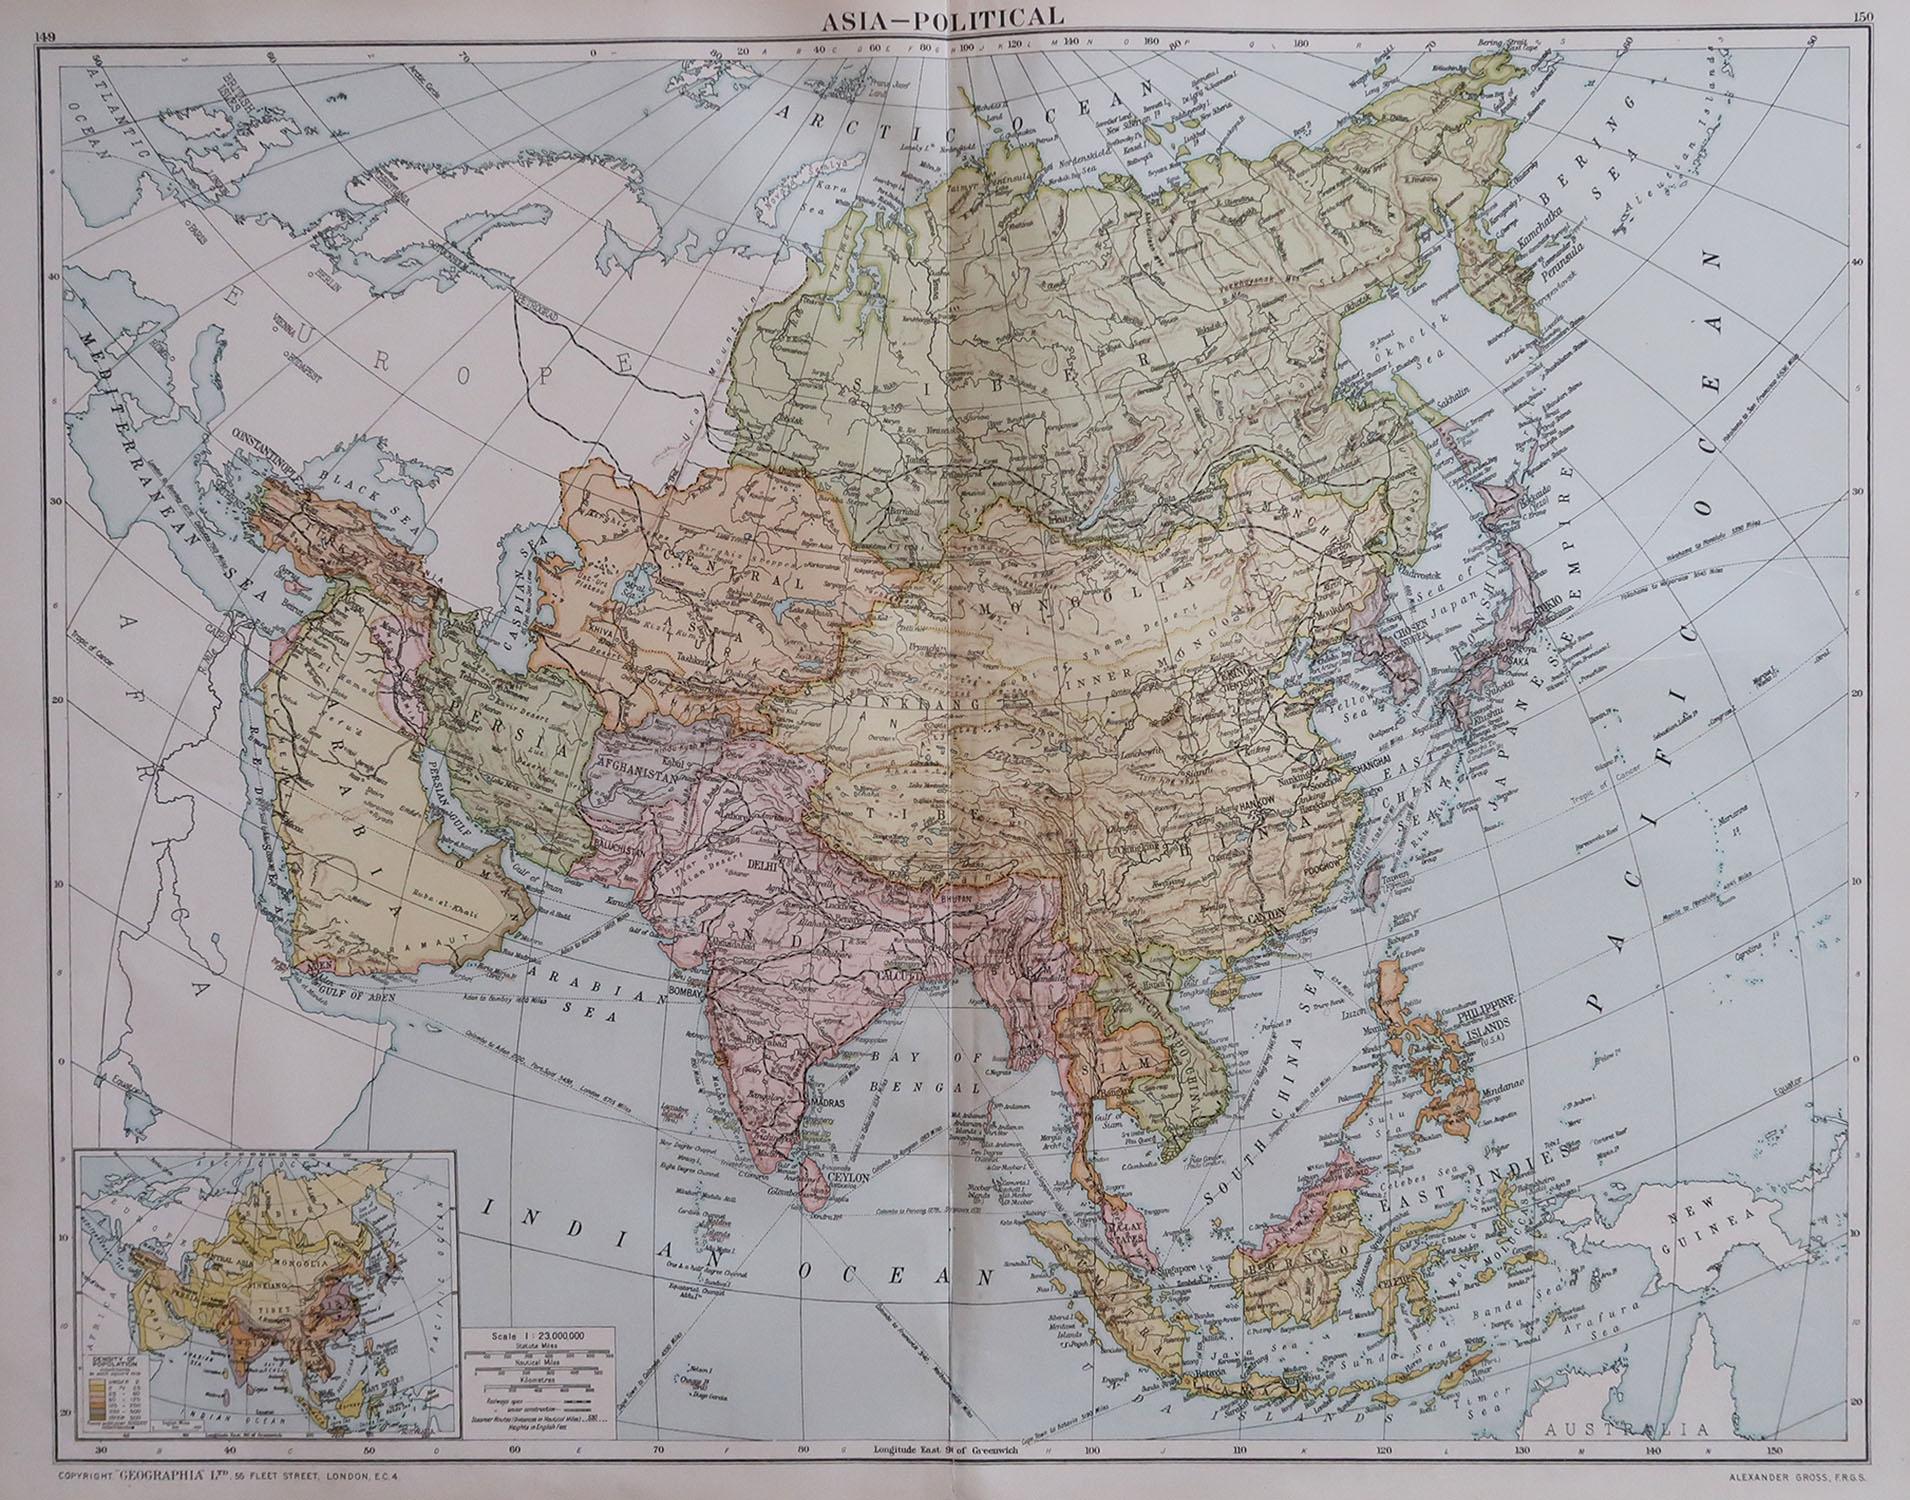 Grande carte de l'Asie

Couleur originale. 

Bon état 

Publié par Alexander Gross

Non encadré.








